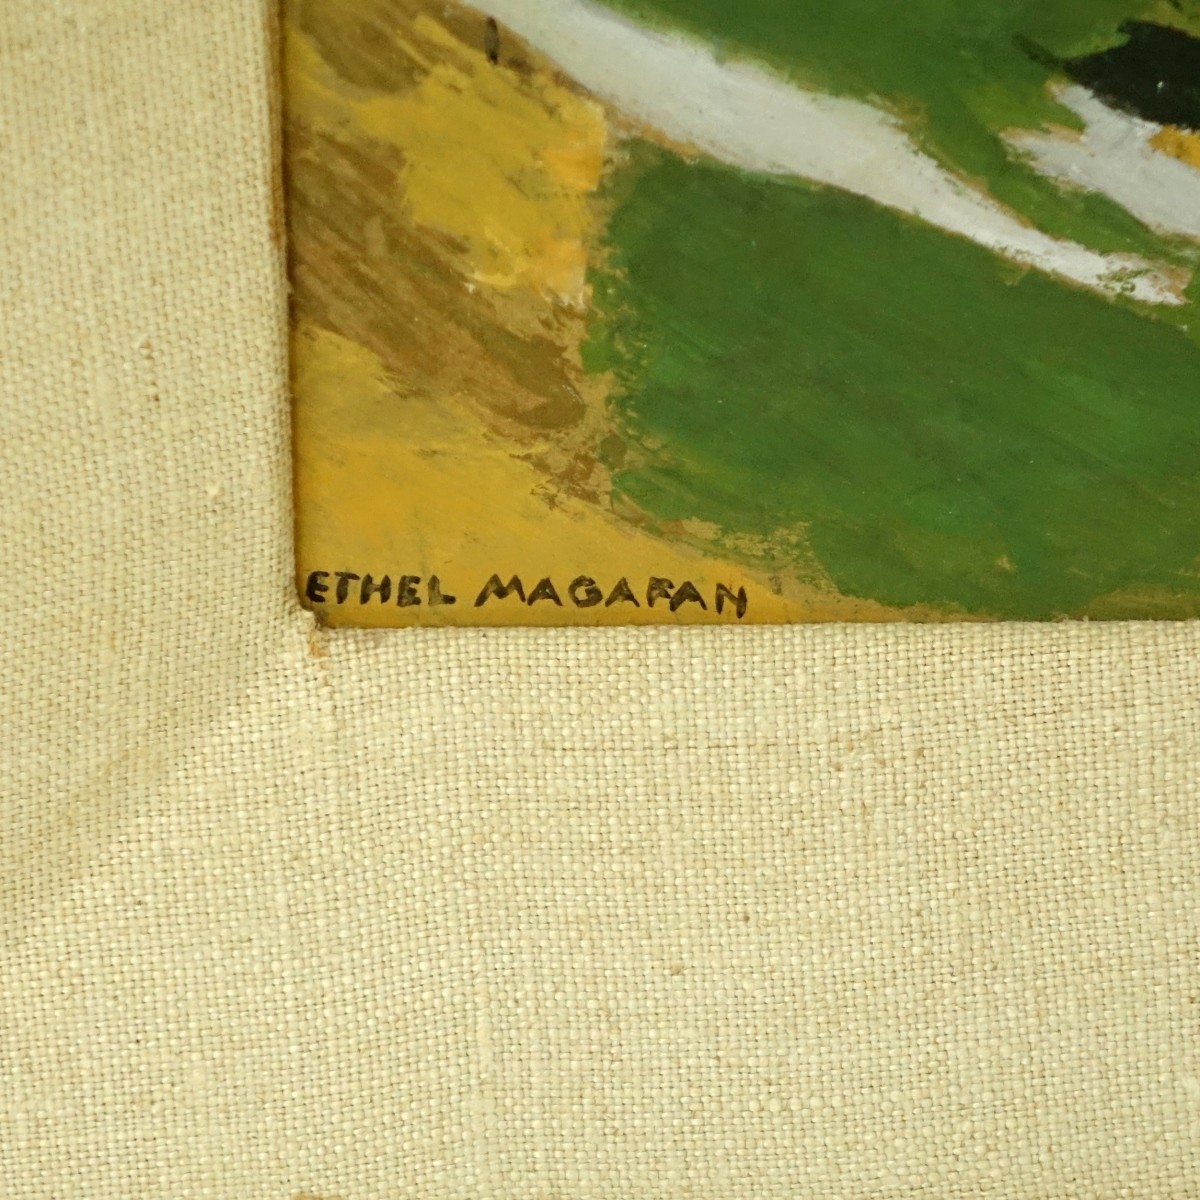 Ethel Magafan Abstract Gouache on Board